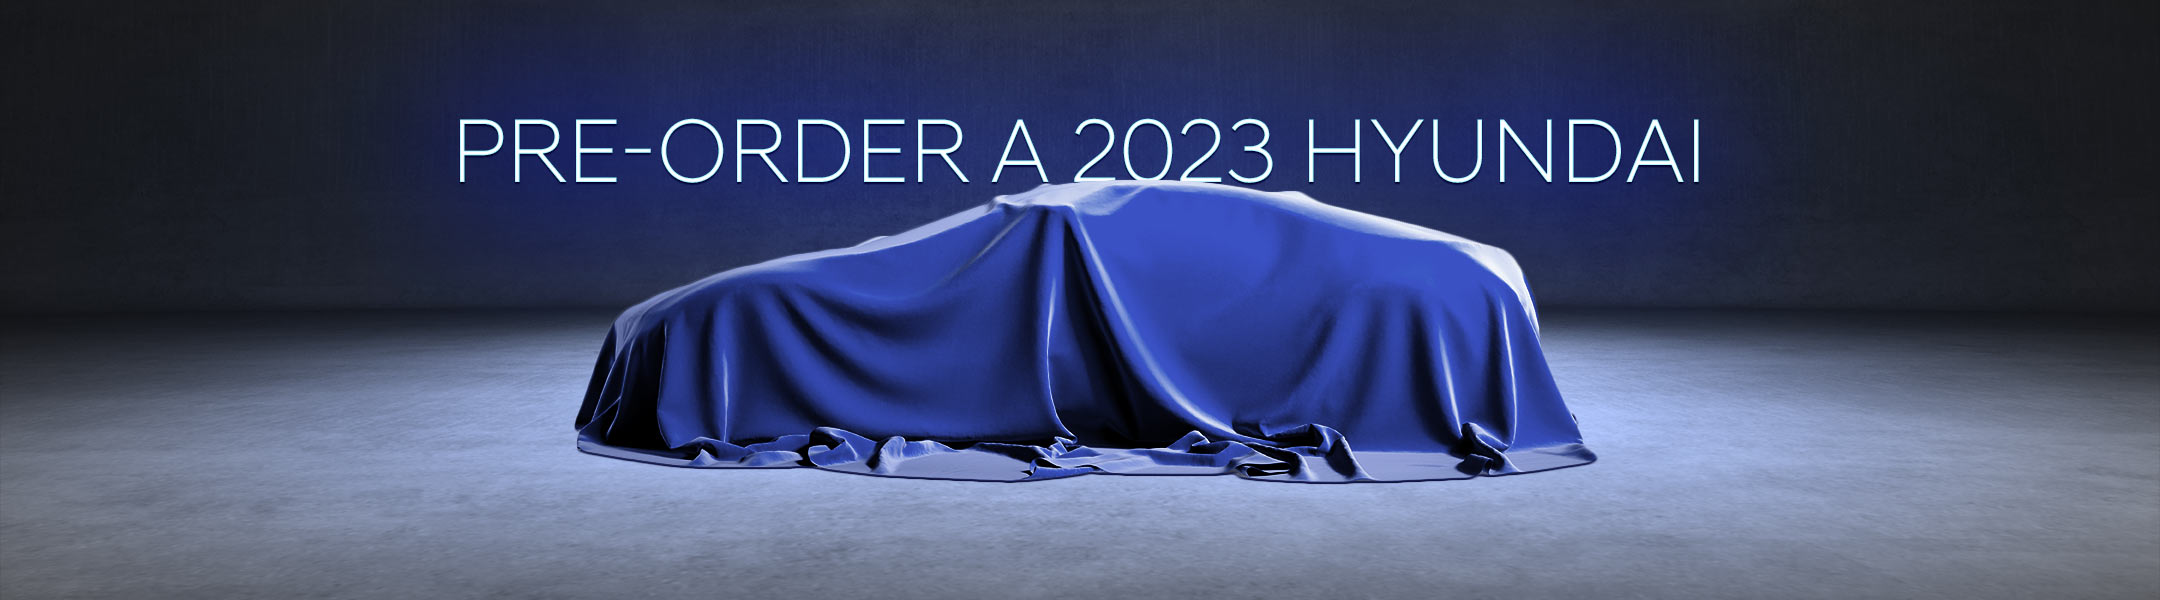 Pre-Order a 2023 Hyundai